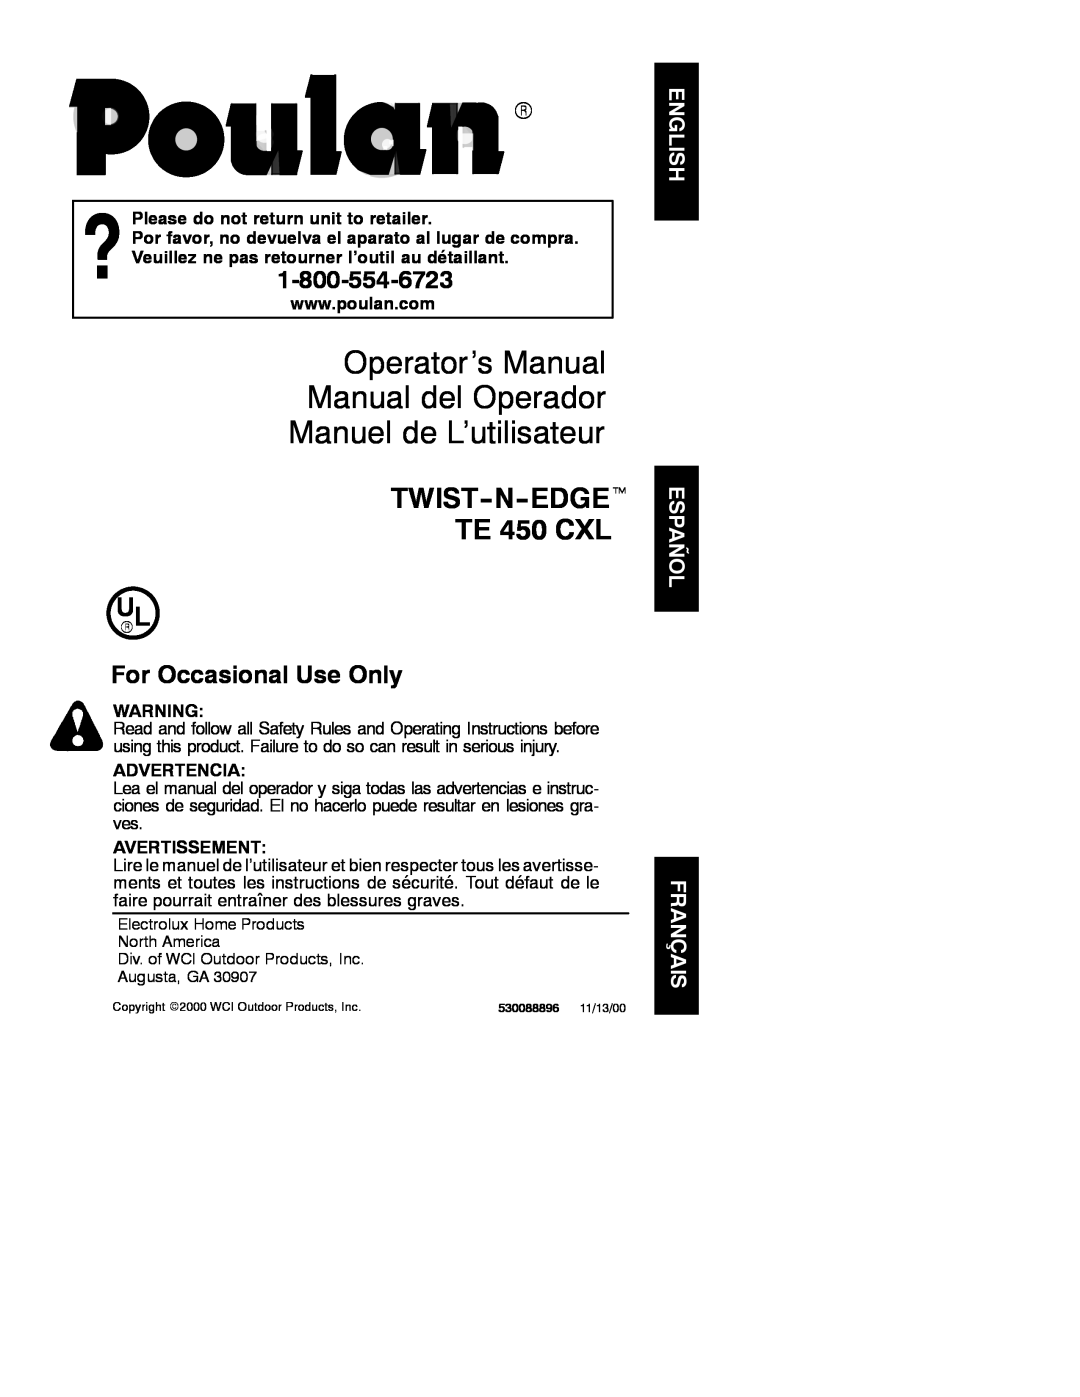 Poulan TE 450 CAL operating instructions Operator’s Manual Manual del Operador Manuel de L’utilisateur, Advertencia 